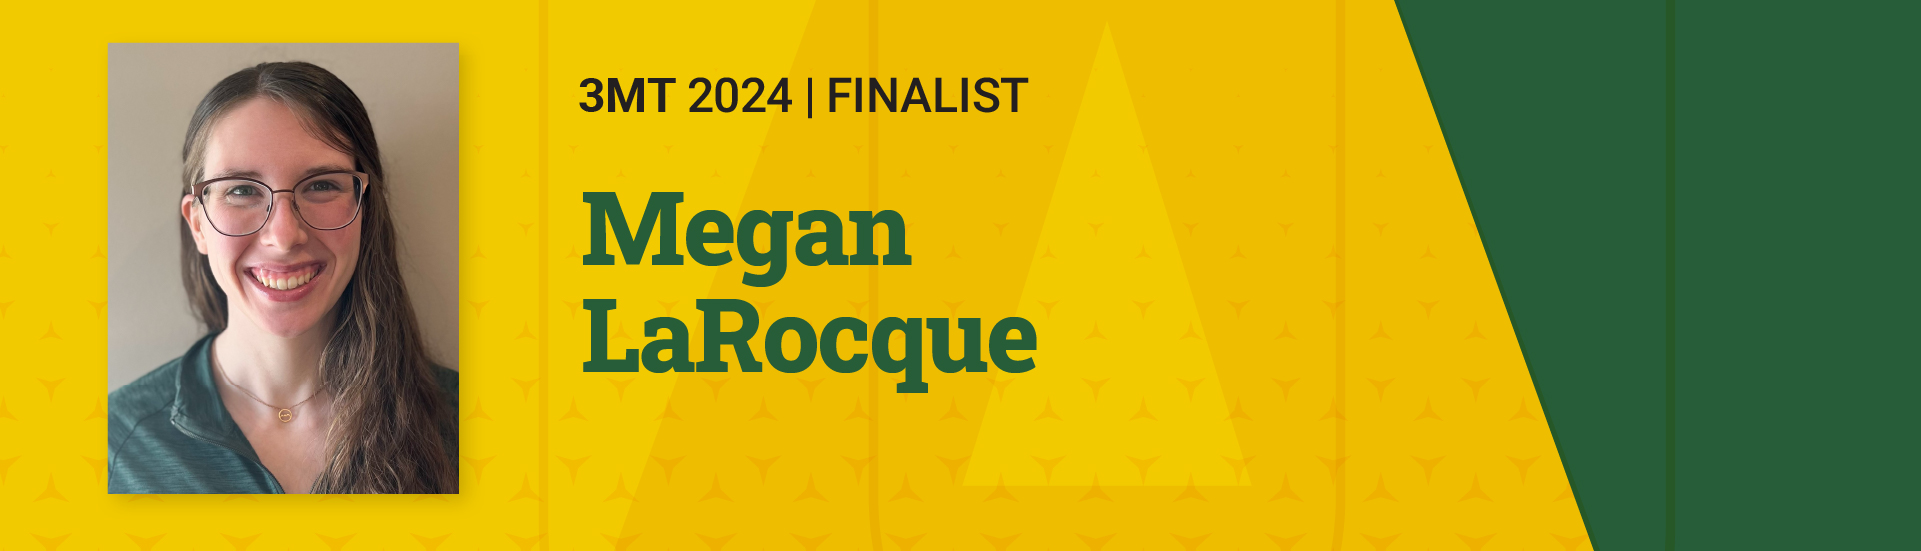 3MT 2024 Finalist Megan LaRocque